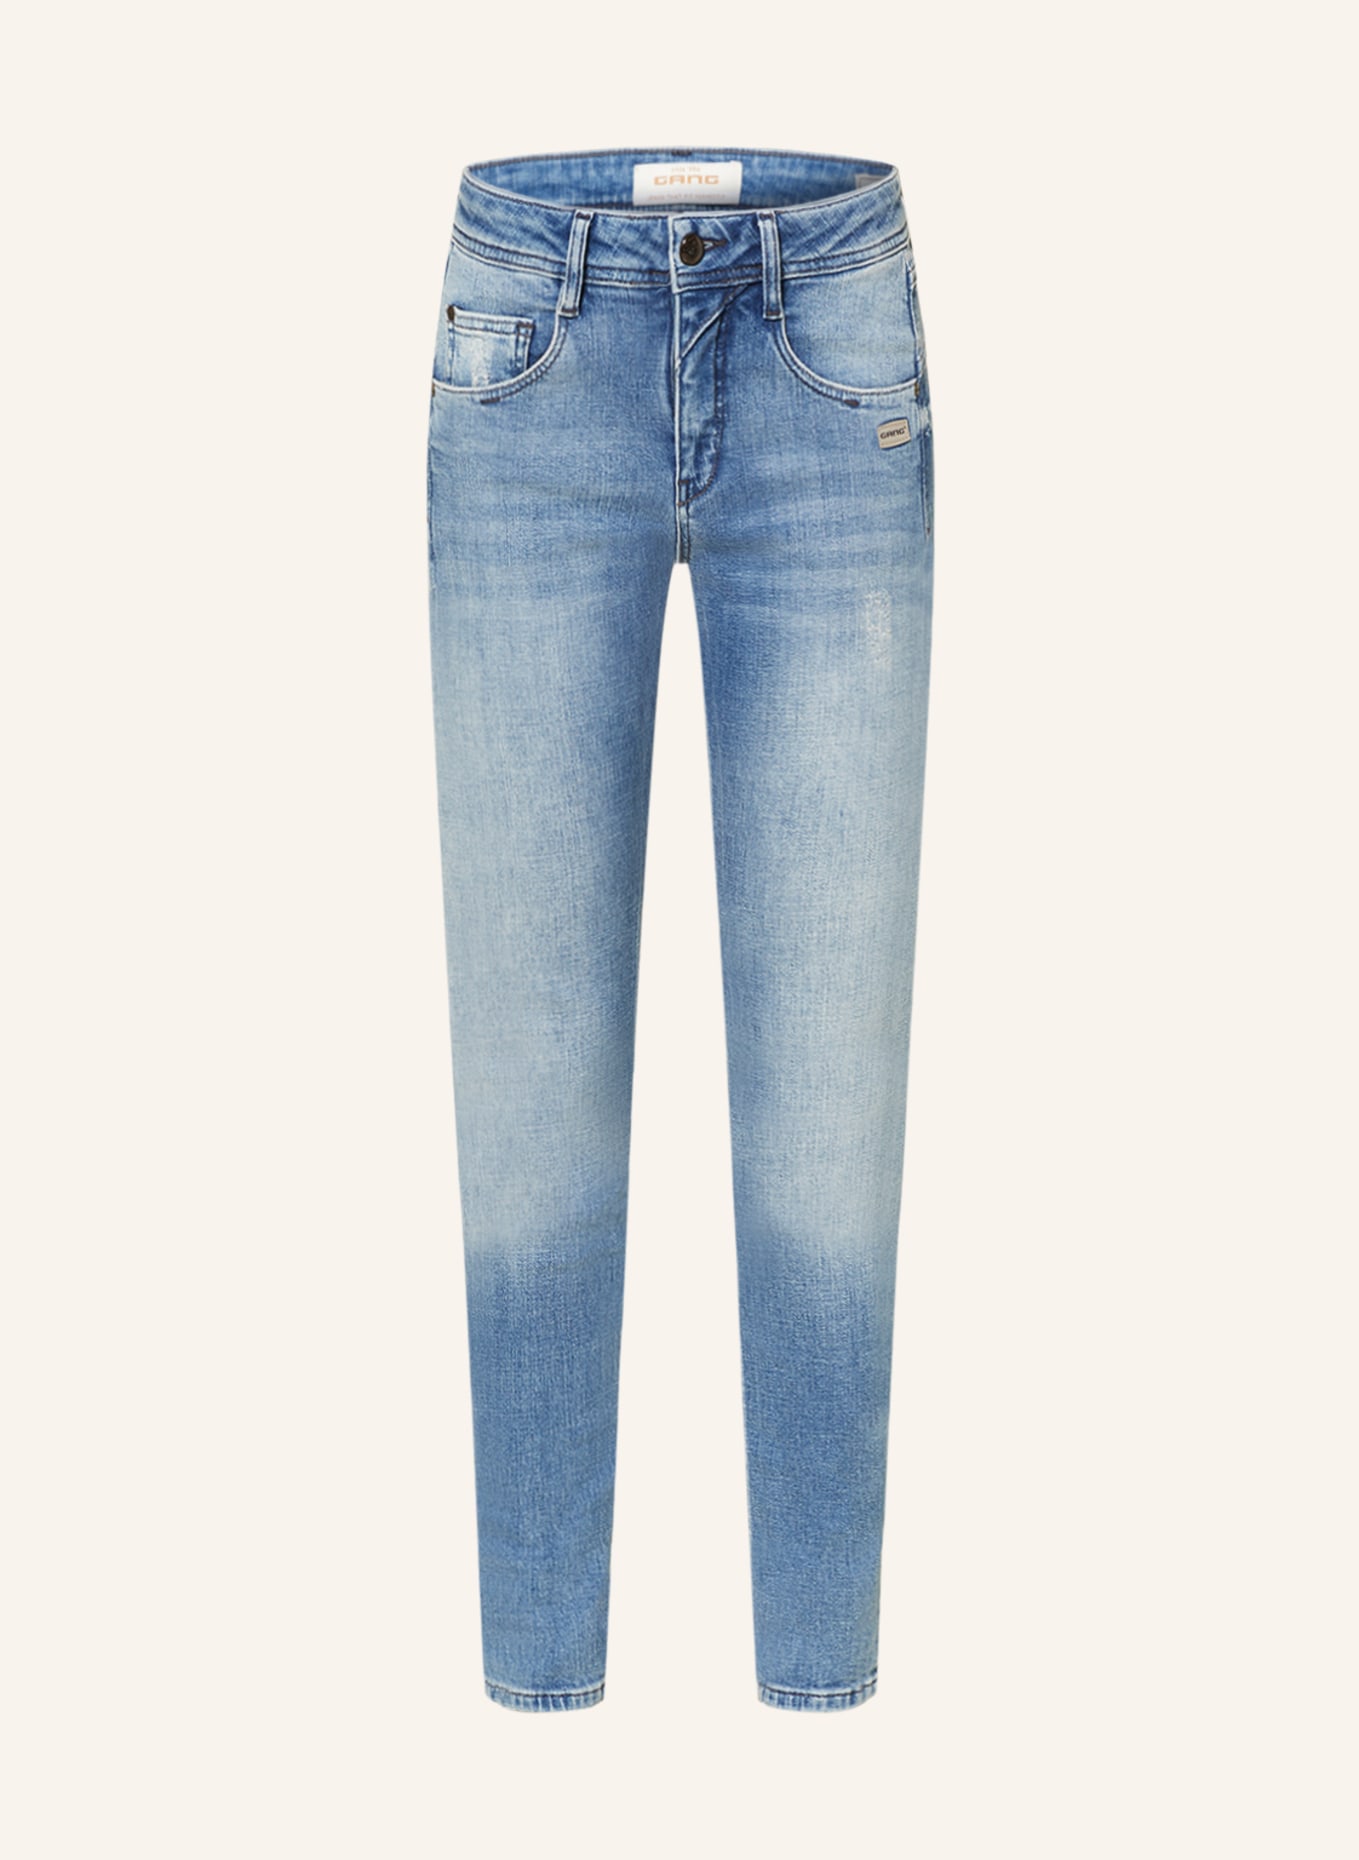 GANG Jeans AMELIE, Farbe: 7535 just forever vintage (Bild 1)